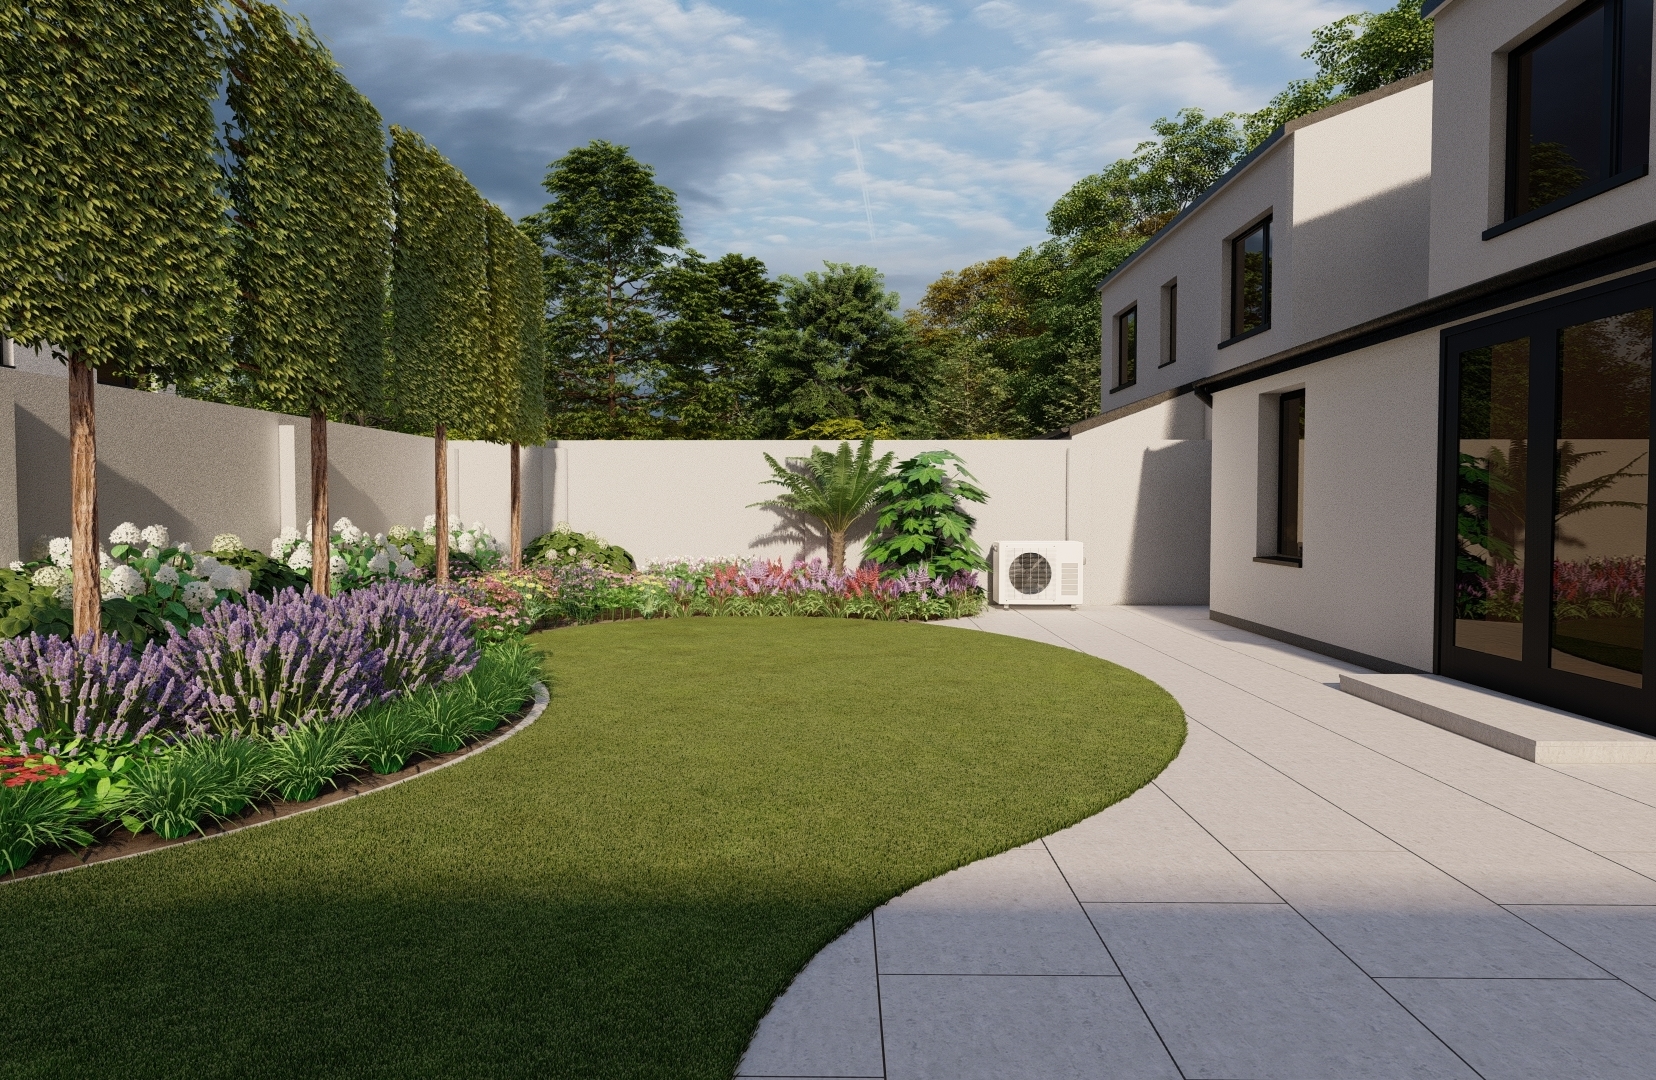 Design Visuals for a Family Garden in Malahide, Co Dublin